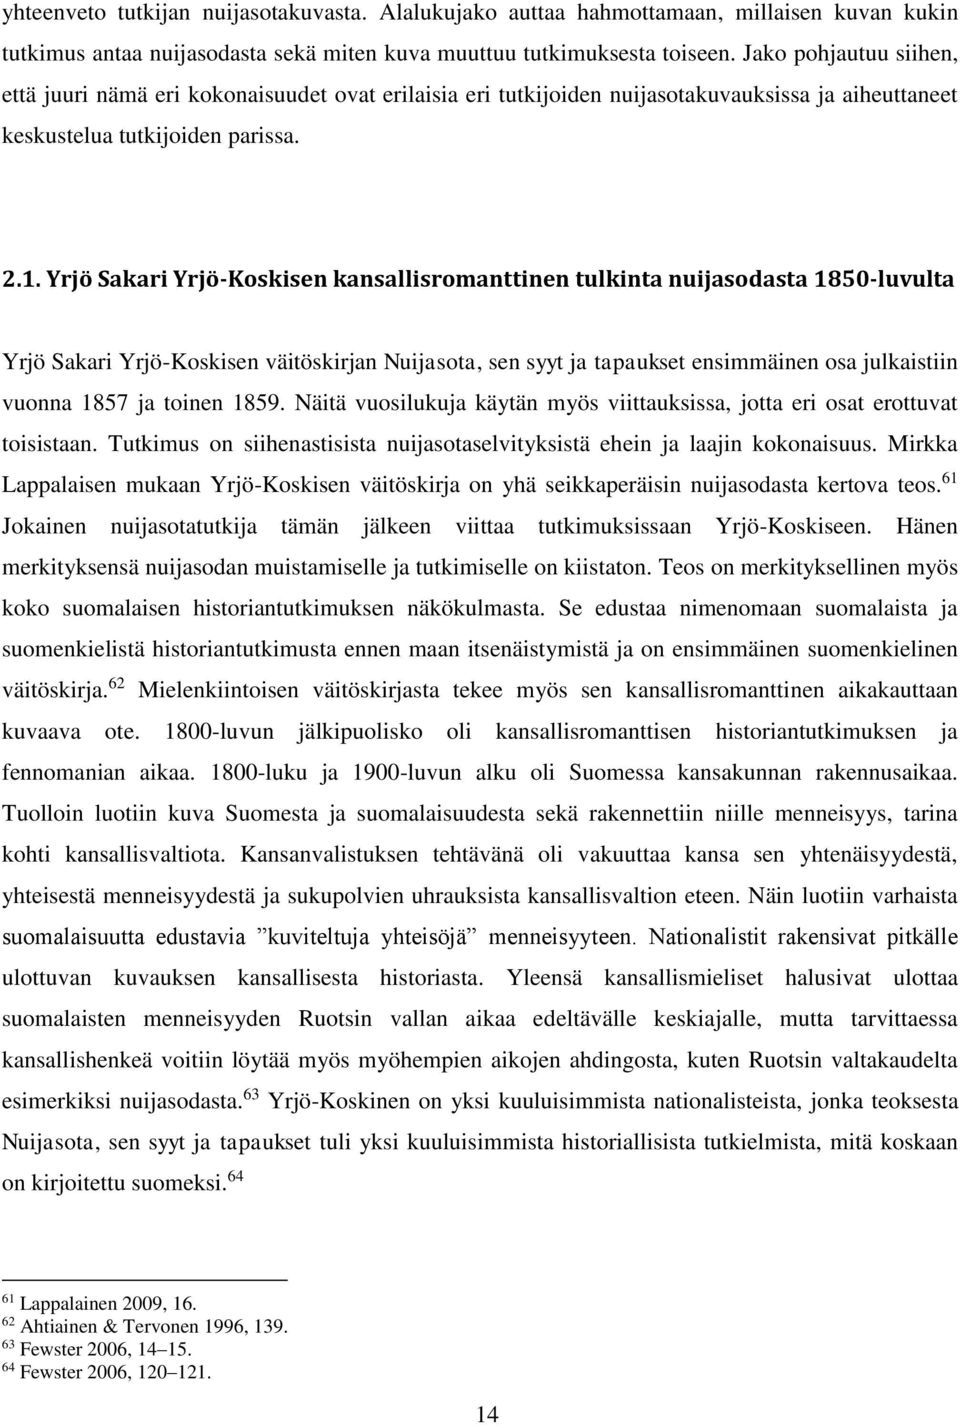 Yrjö Sakari Yrjö-Koskisen kansallisromanttinen tulkinta nuijasodasta 1850-luvulta Yrjö Sakari Yrjö-Koskisen väitöskirjan Nuijasota, sen syyt ja tapaukset ensimmäinen osa julkaistiin vuonna 1857 ja